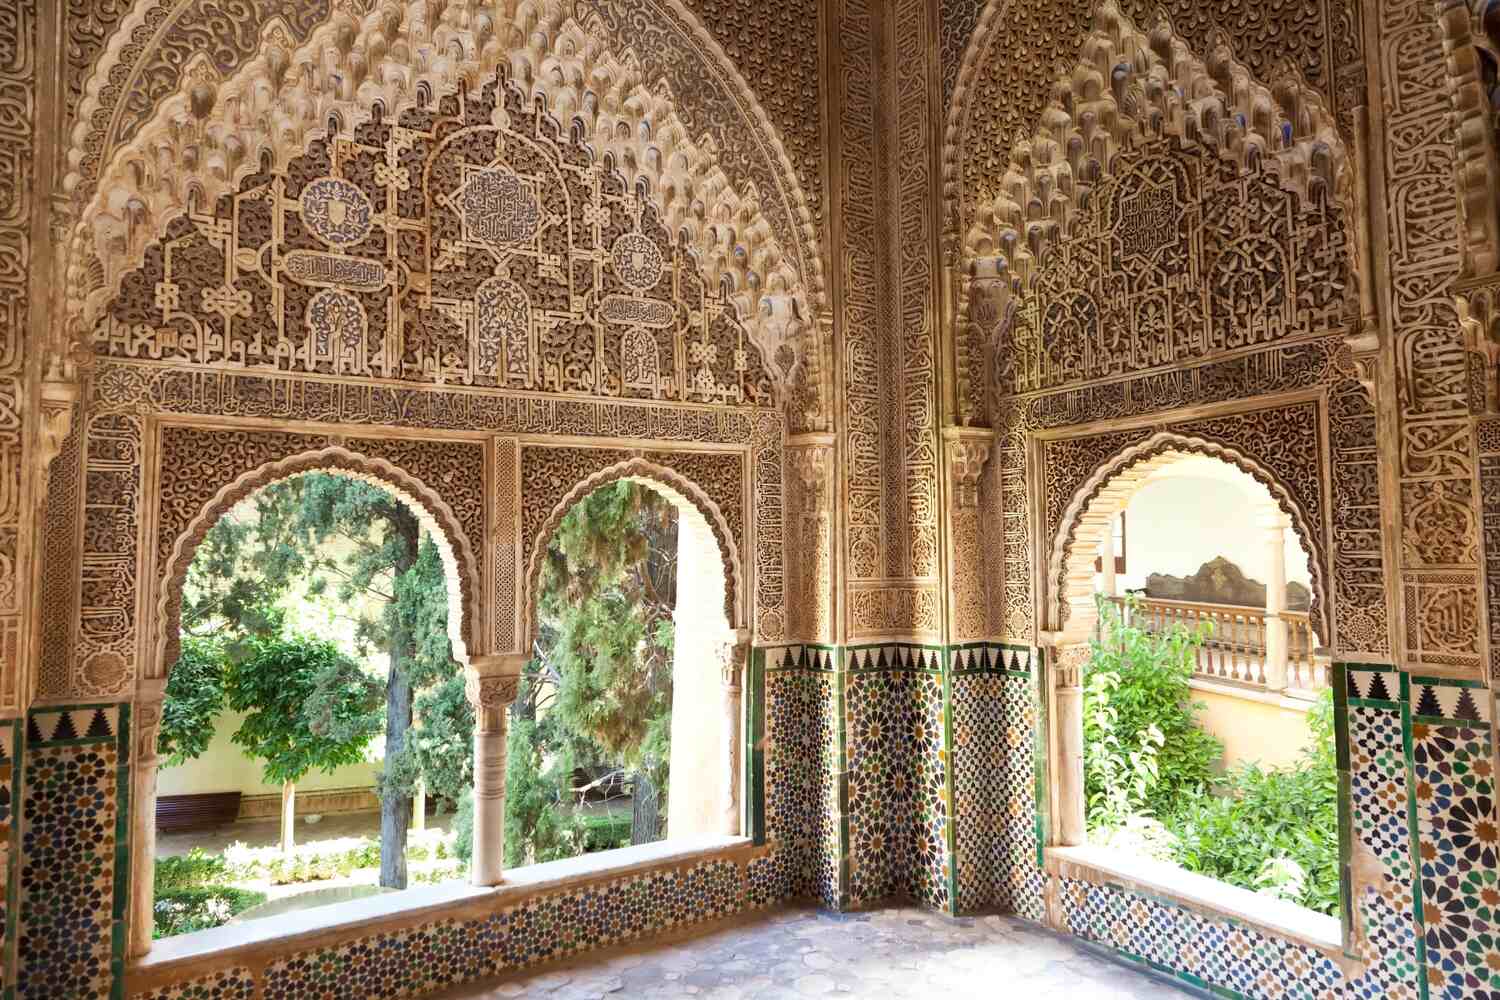 Islamic art inside the Generalife garden when visiting the Alhambra